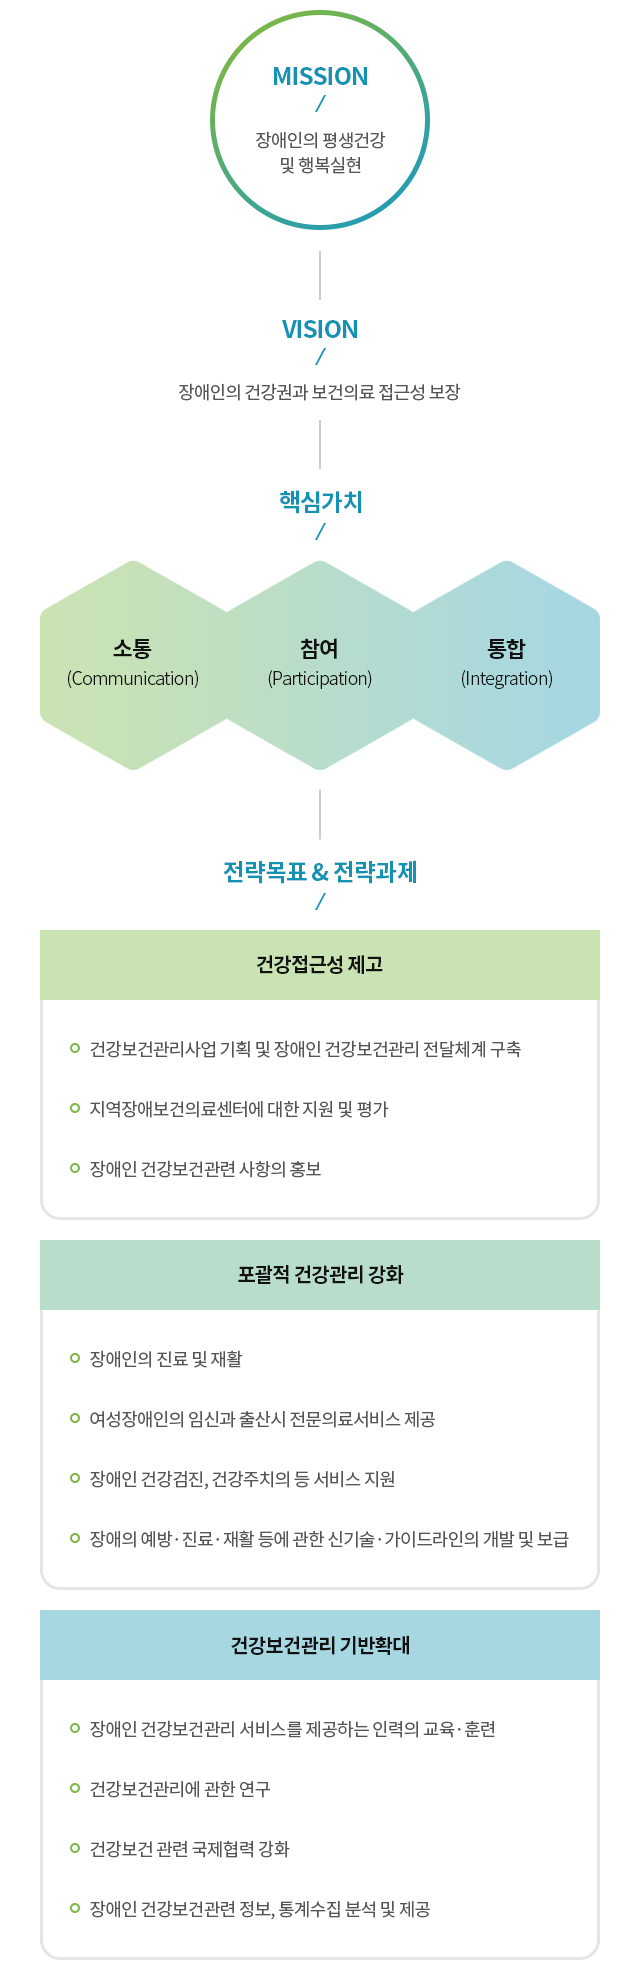 
			(1) 미션 : 장애인의 평생건강 및 행복실현 
			(2) 비전 : 장애인의 건강권과 보건의료 접근성 보장 
			(3) 핵심가치 : 1. 소통(Communication) 2. 참여(Participation) 3. 통합(Integration) 
			(4) 전략목표 & 전략과제 : 
			1. 건강접근성제고 
			- 건강보건관리사업 기획 및 장애인 건강보건관리 전달체계 구축
			- 지역장애보건의료센터에 대한 지원 및 평가
			- 장애인 건강보건관련 사항의 홍보
			2. 포괄적 건강관리 강화
			- 장애인의 진료 및 재활 
			- 여성장애인의 임신과 출산시 전문의료서비스 제공
			- 장애인 건강검진, 건강주치의 등 서비스 지원
			- 장애의 예방,진료,재활 등에 관한 신기술,가이드 라인의 개발 및 보급
			3. 건강보건관리 기반확대
			- 장애인 건강보건관리 서비스를 제공하는 인력의 교육,훈련
			- 건강보건관리에 관한 연구
			- 건강보건 관련 국제협력 강화
			- 장애인 건강보건관련 정보, 통계수집 분석 및 제공	
			